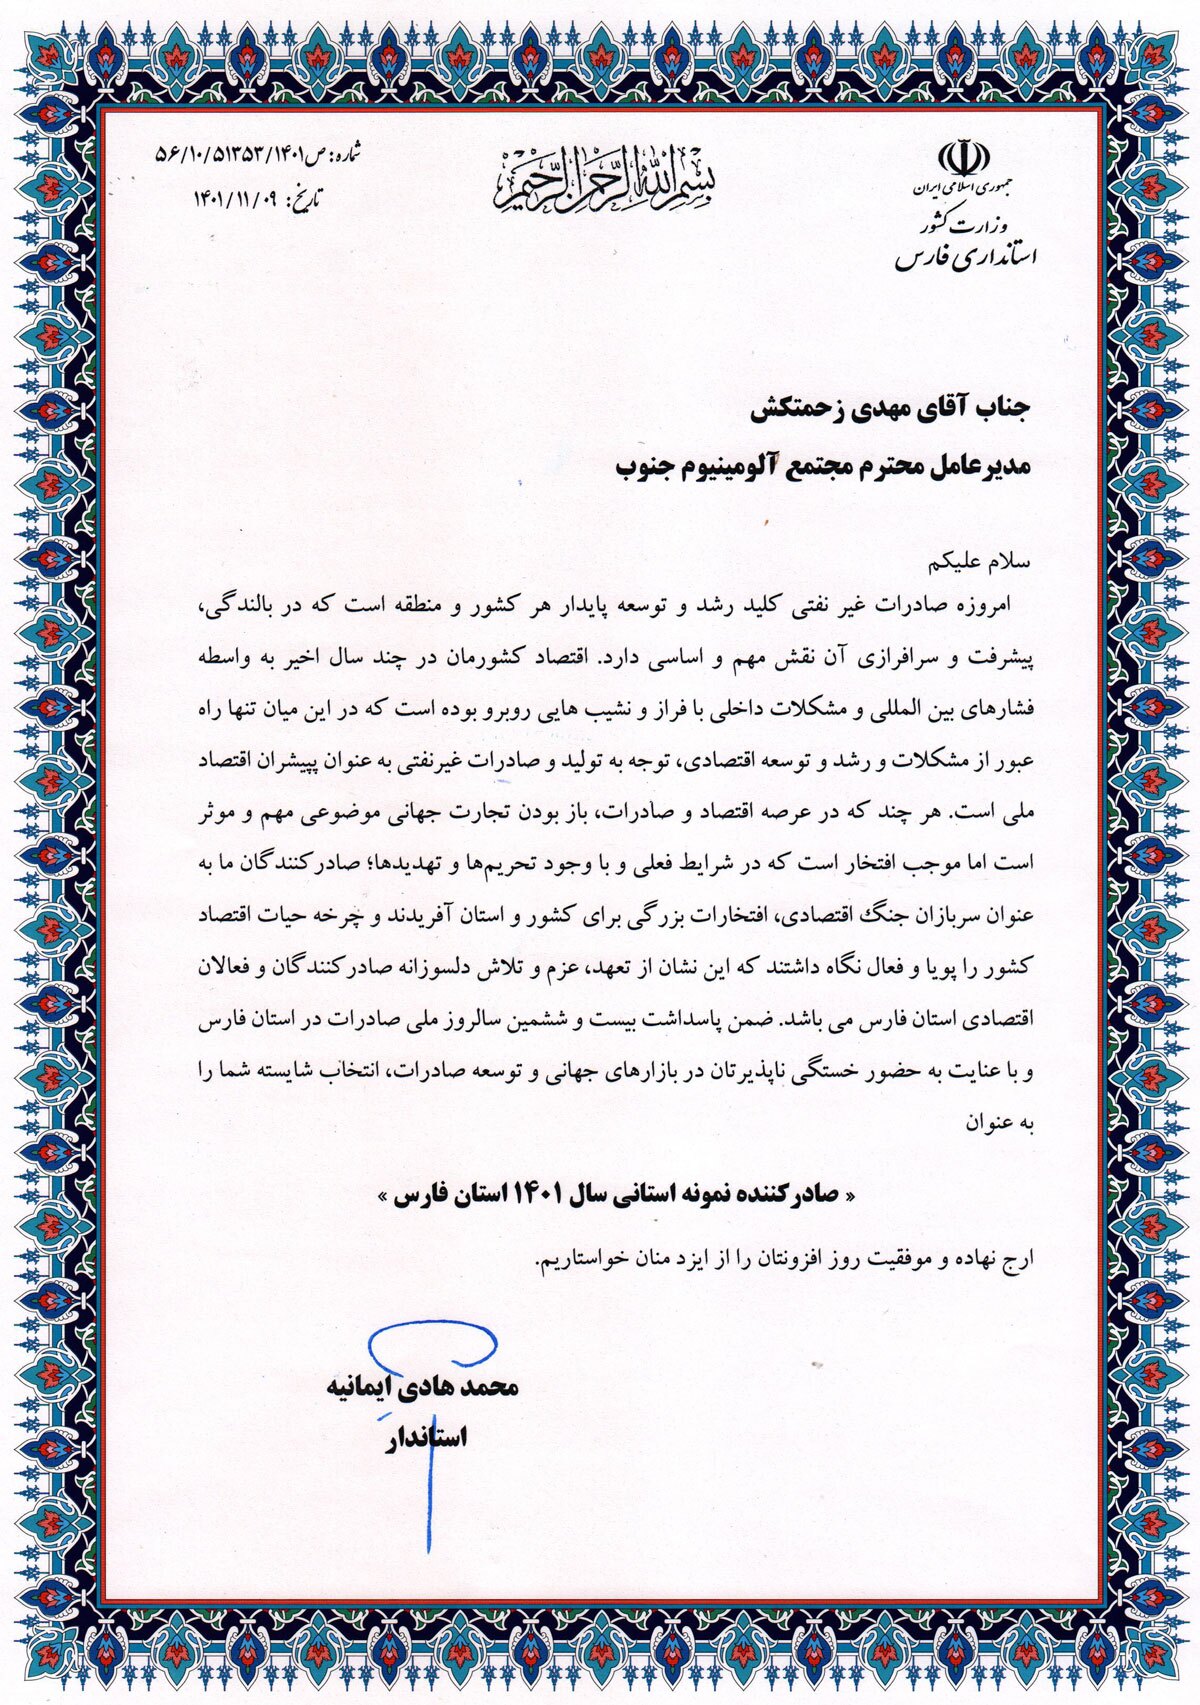 تندیس صادرکننده نمونه استانی سال ۱۴۰۱ استان فارس به مهندس زحمتکش مدیرعامل سالکو اهدا شد